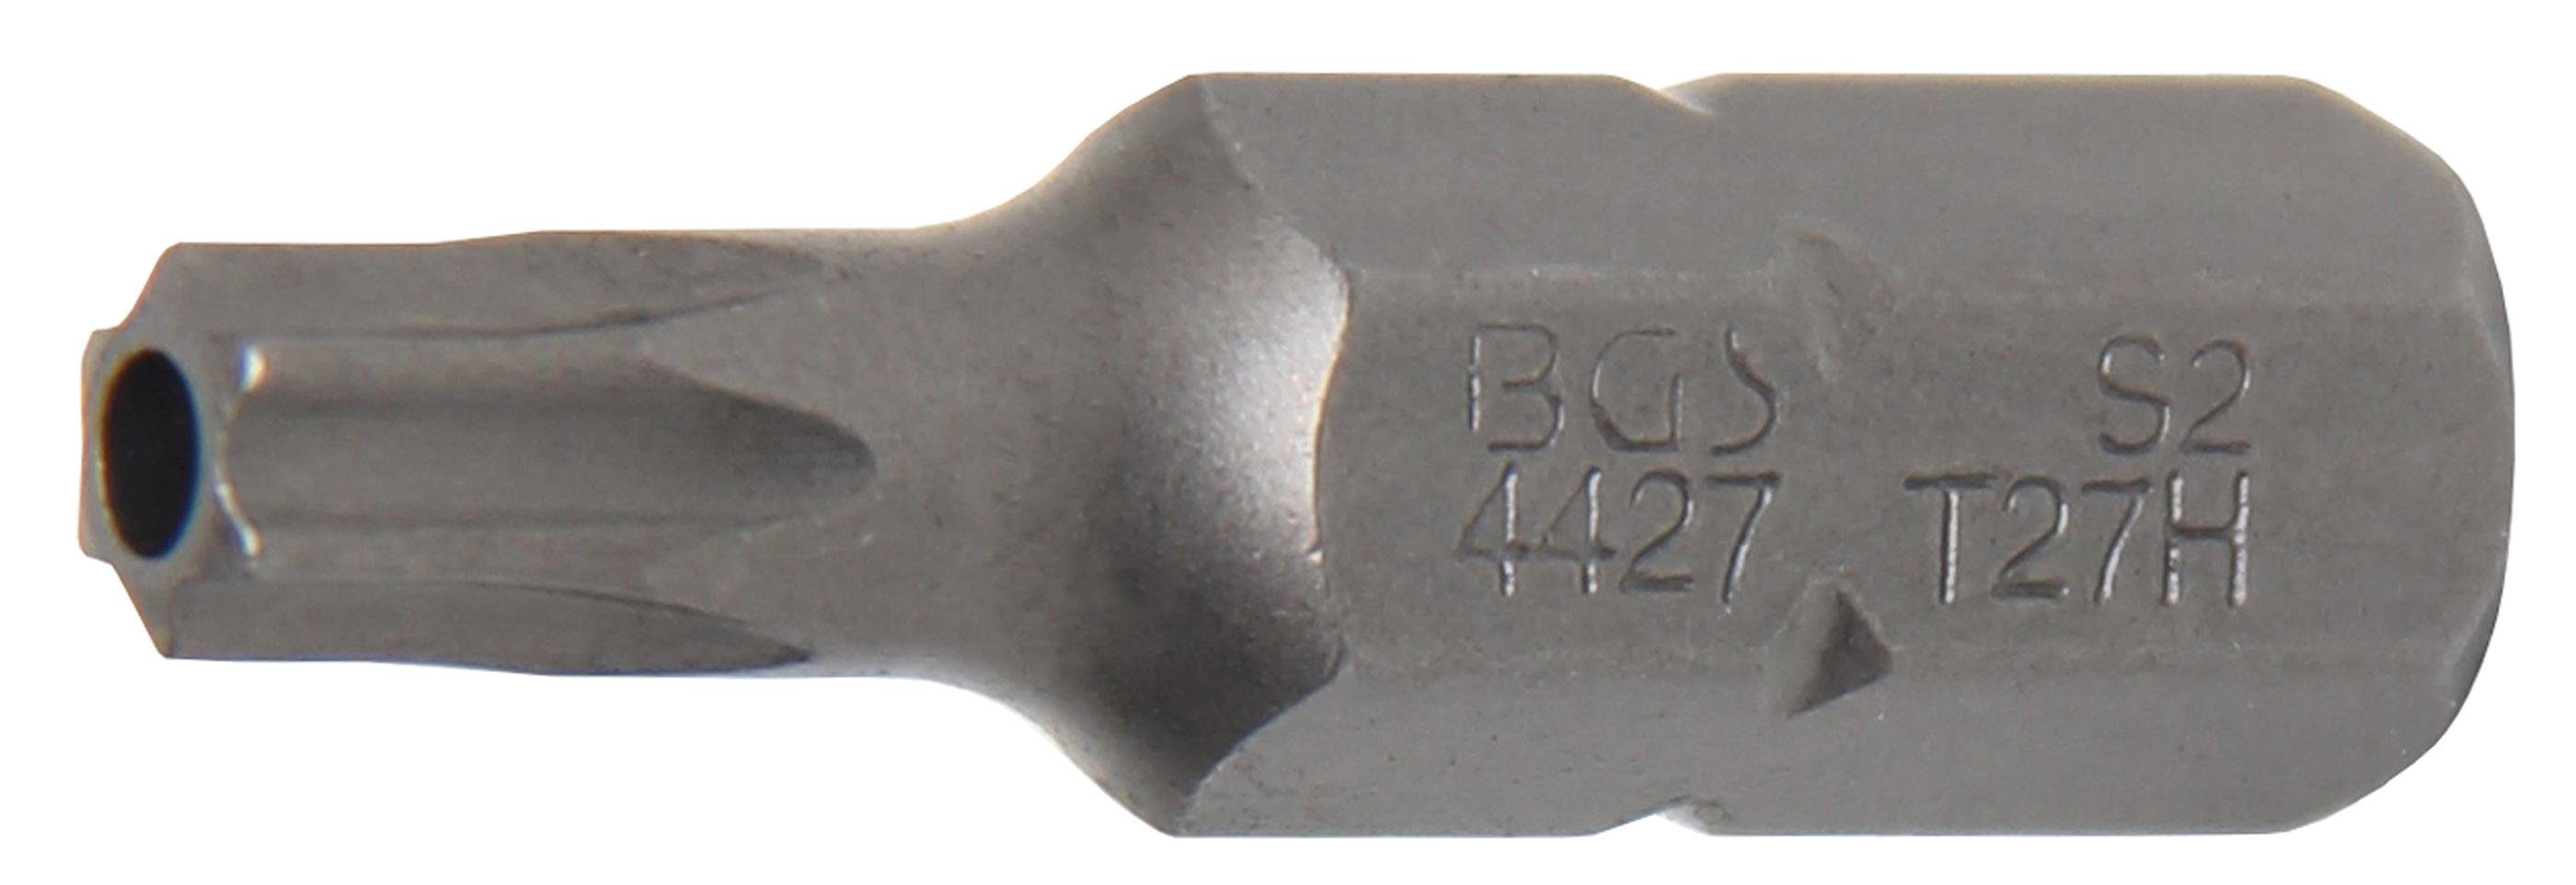 BGS technic Bit-Schraubendreher Bit, Länge 30 mm, Antrieb Außensechskant 8 mm (5/16), T-Profil (für Torx) mit Bohrung T27